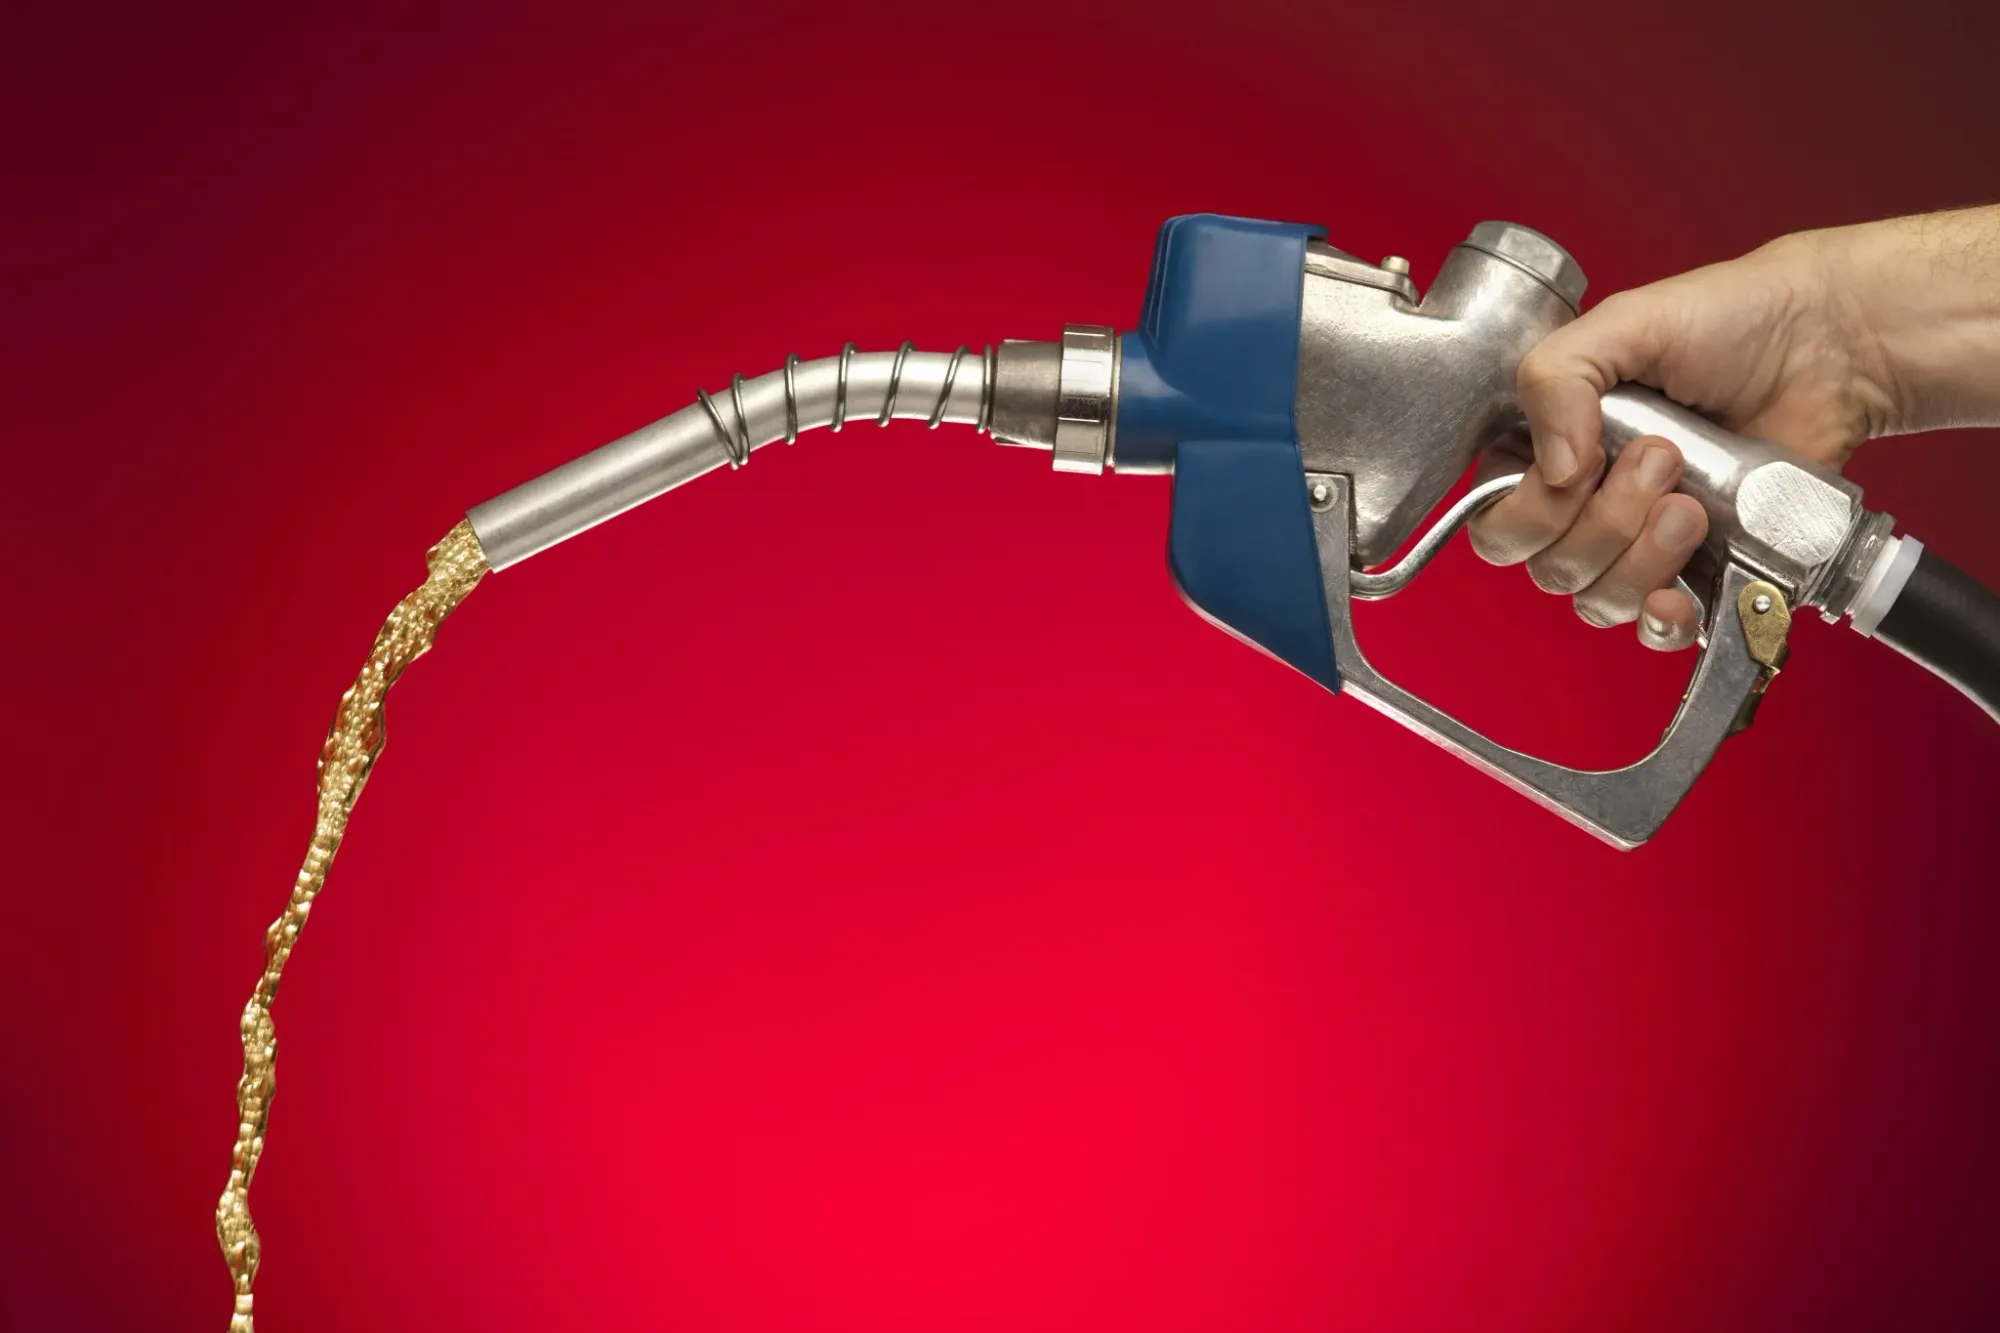 Gasolina fica mais cara no primeiro semestre e chega a R$ 6,02, aponta índice